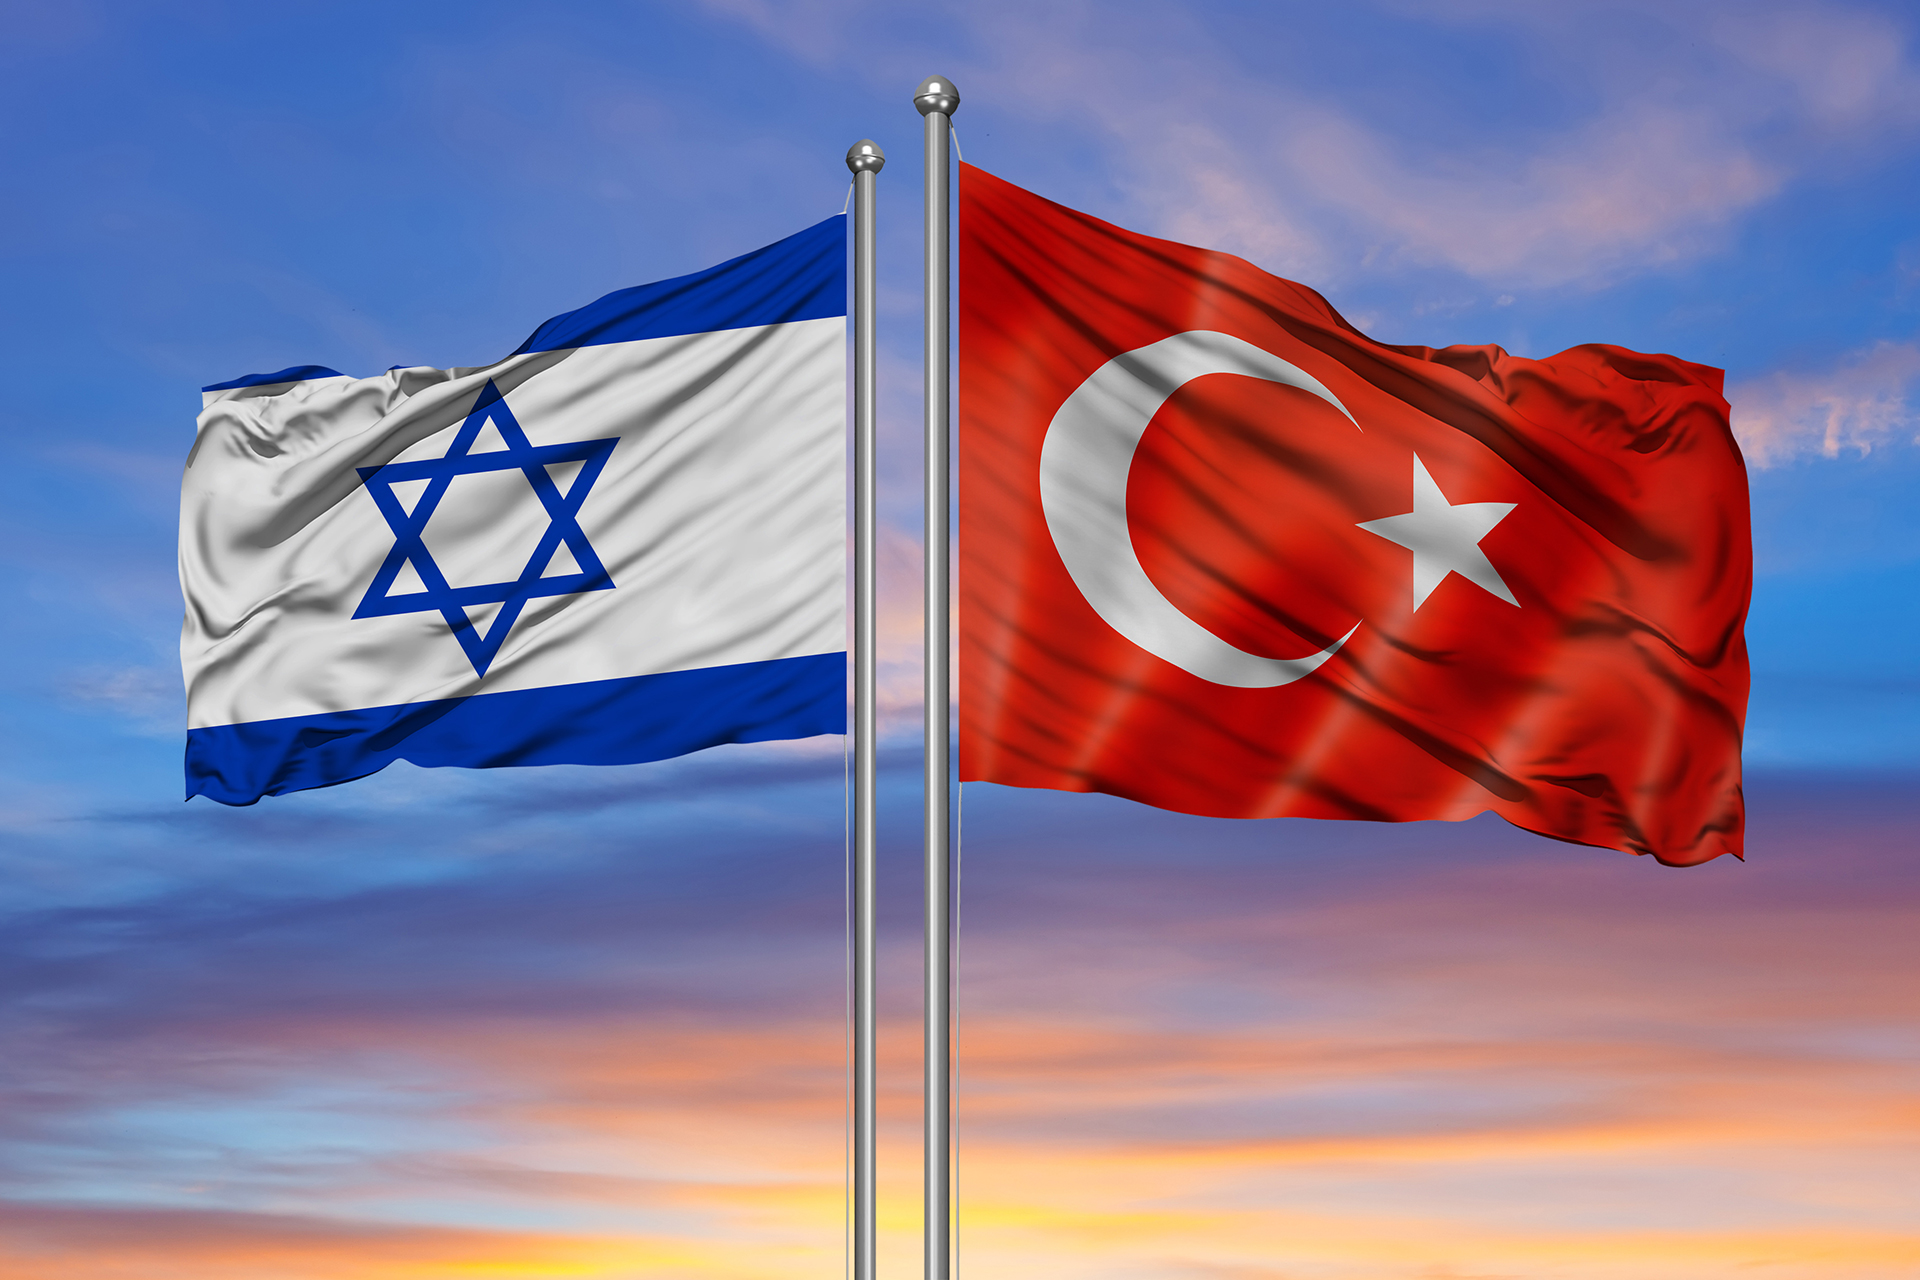 Turquie boycotte, crise économique Israël s'aggrave, selon analystes